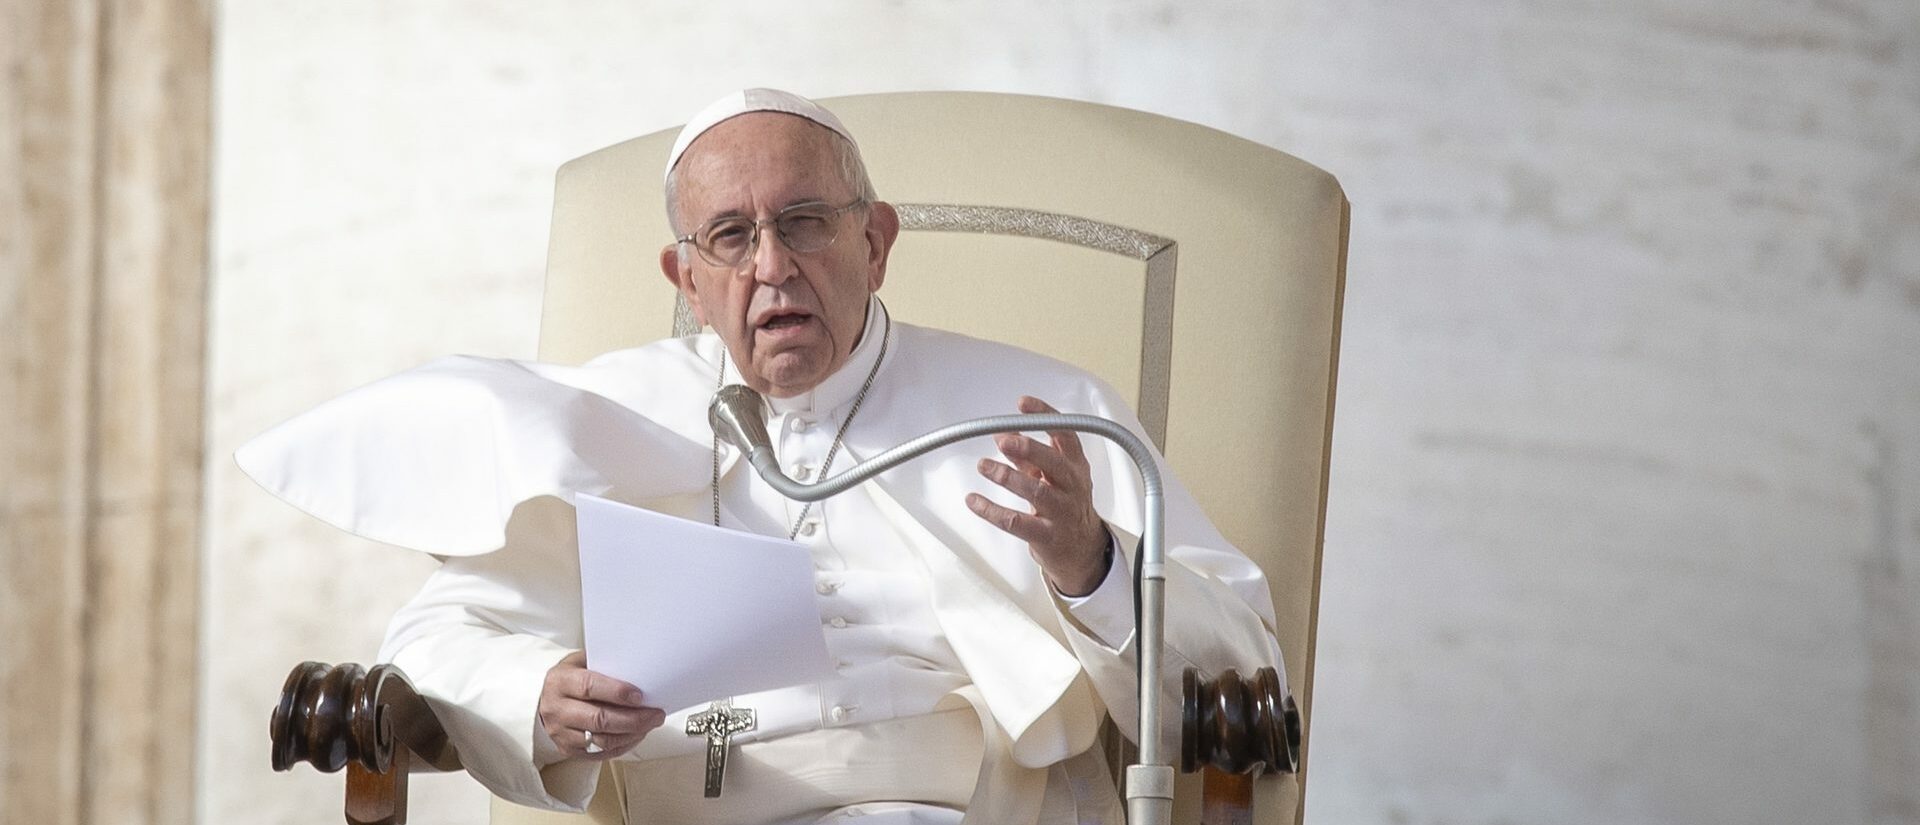 Le pape François a choisi d'appliquer la plus grande prudence lors de ses interventions | © Antoine Mekary I.Media